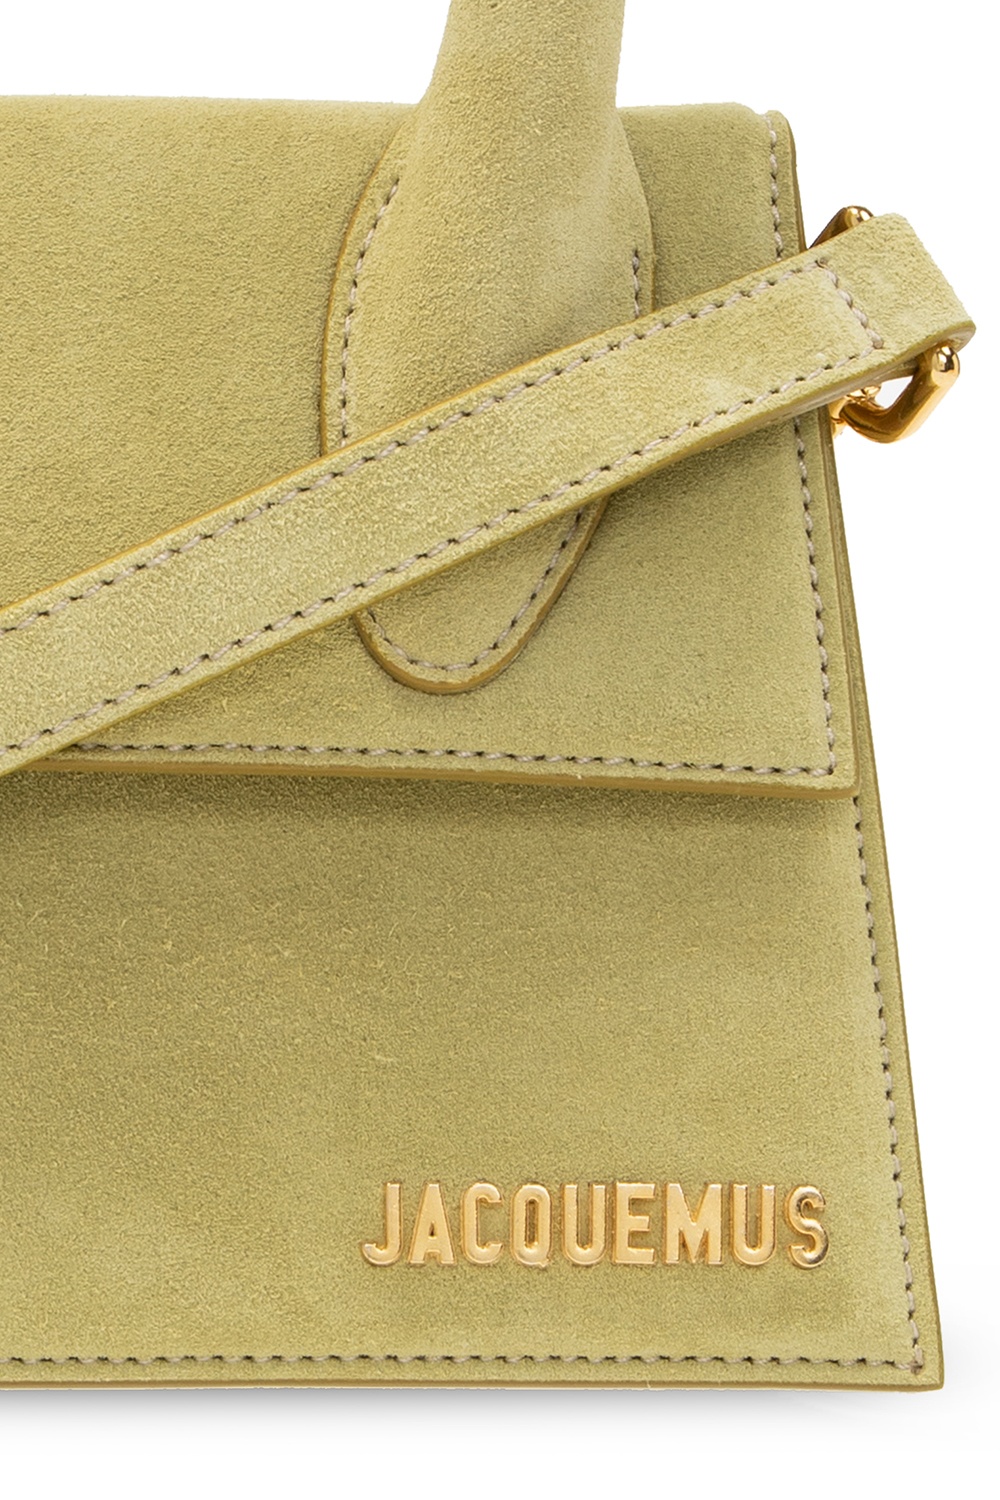 Jacquemus Le Chiquito Moyen, Light Green – Sunset Boutique